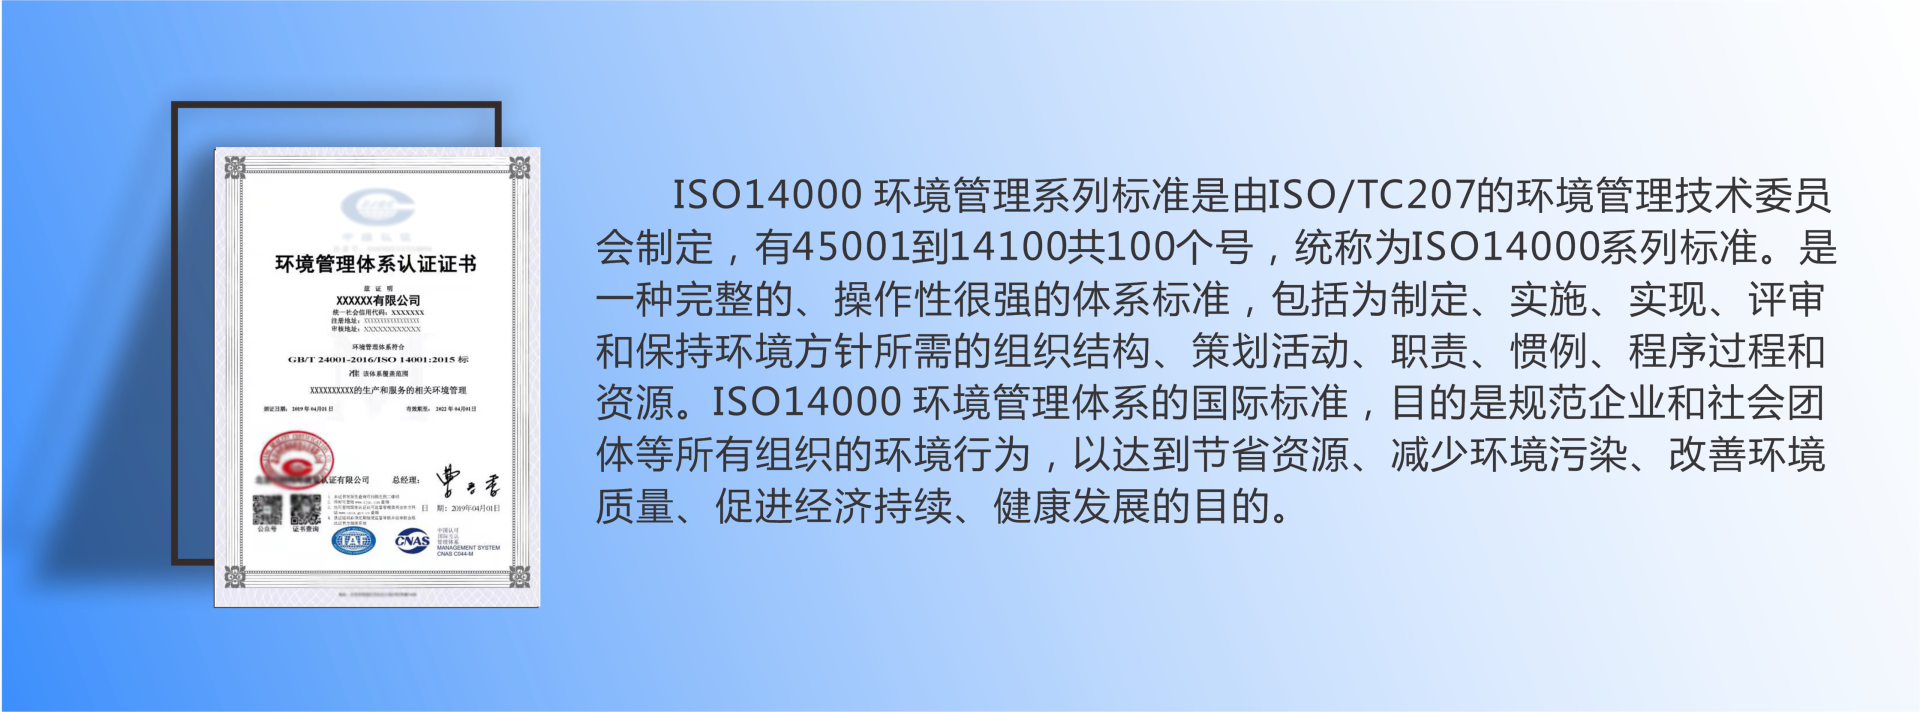 崇州14001环境管理体系   ISO14001认证  环境管理体系认证 14001管理体系认证示例图2